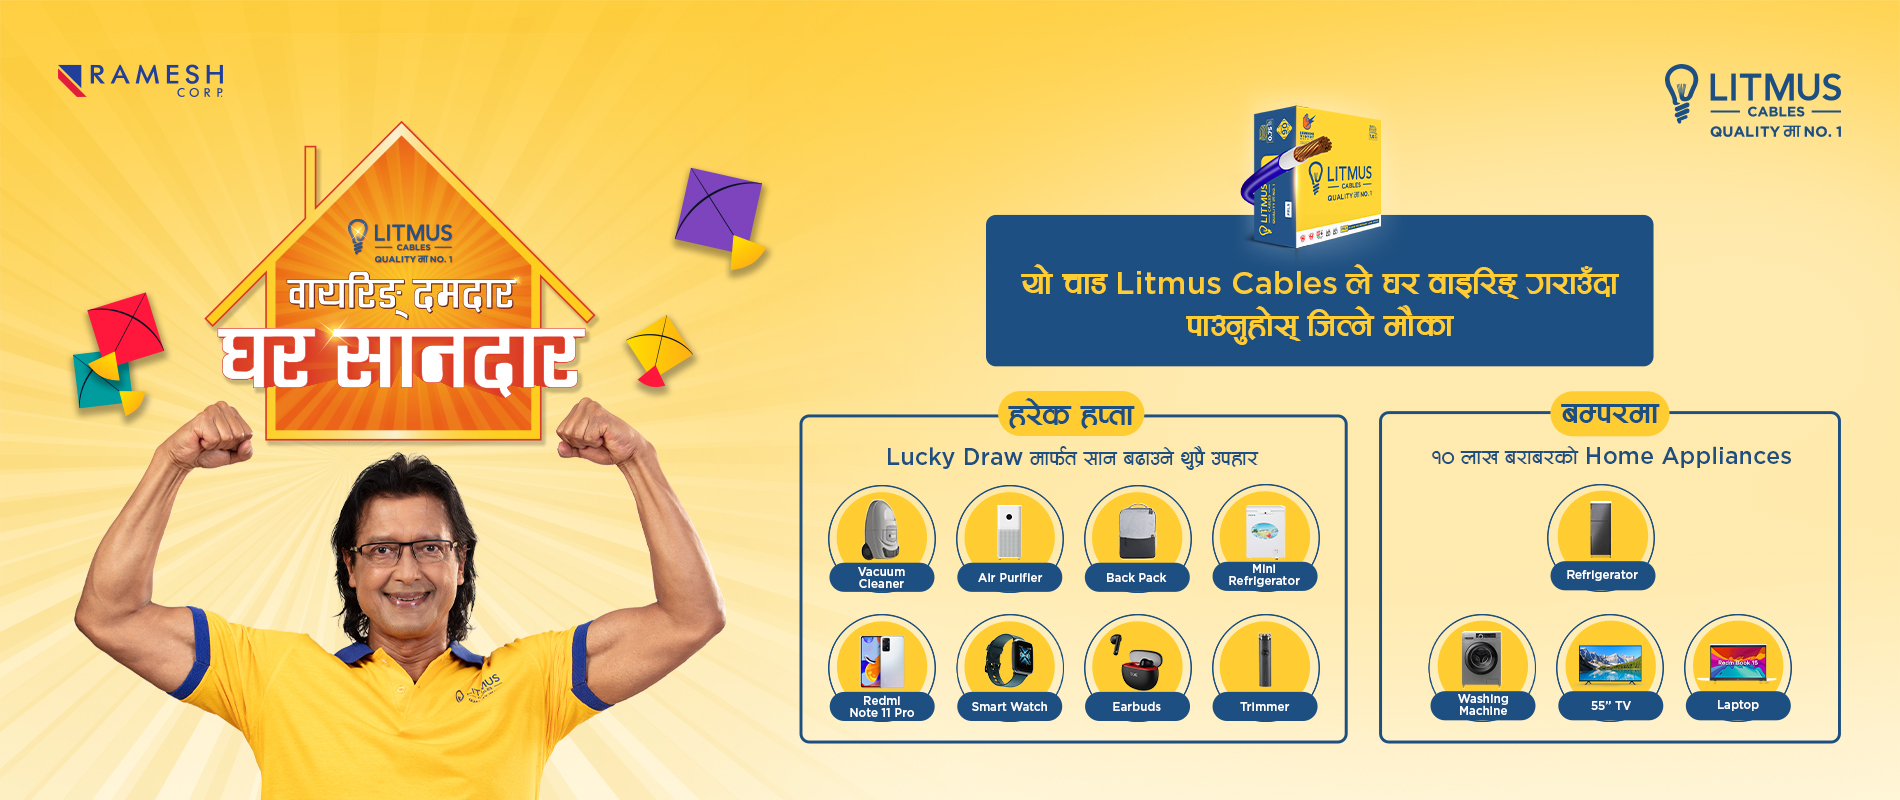 Limtus Cables-Wiring Damdaar, Ghar Shaandaar scheme